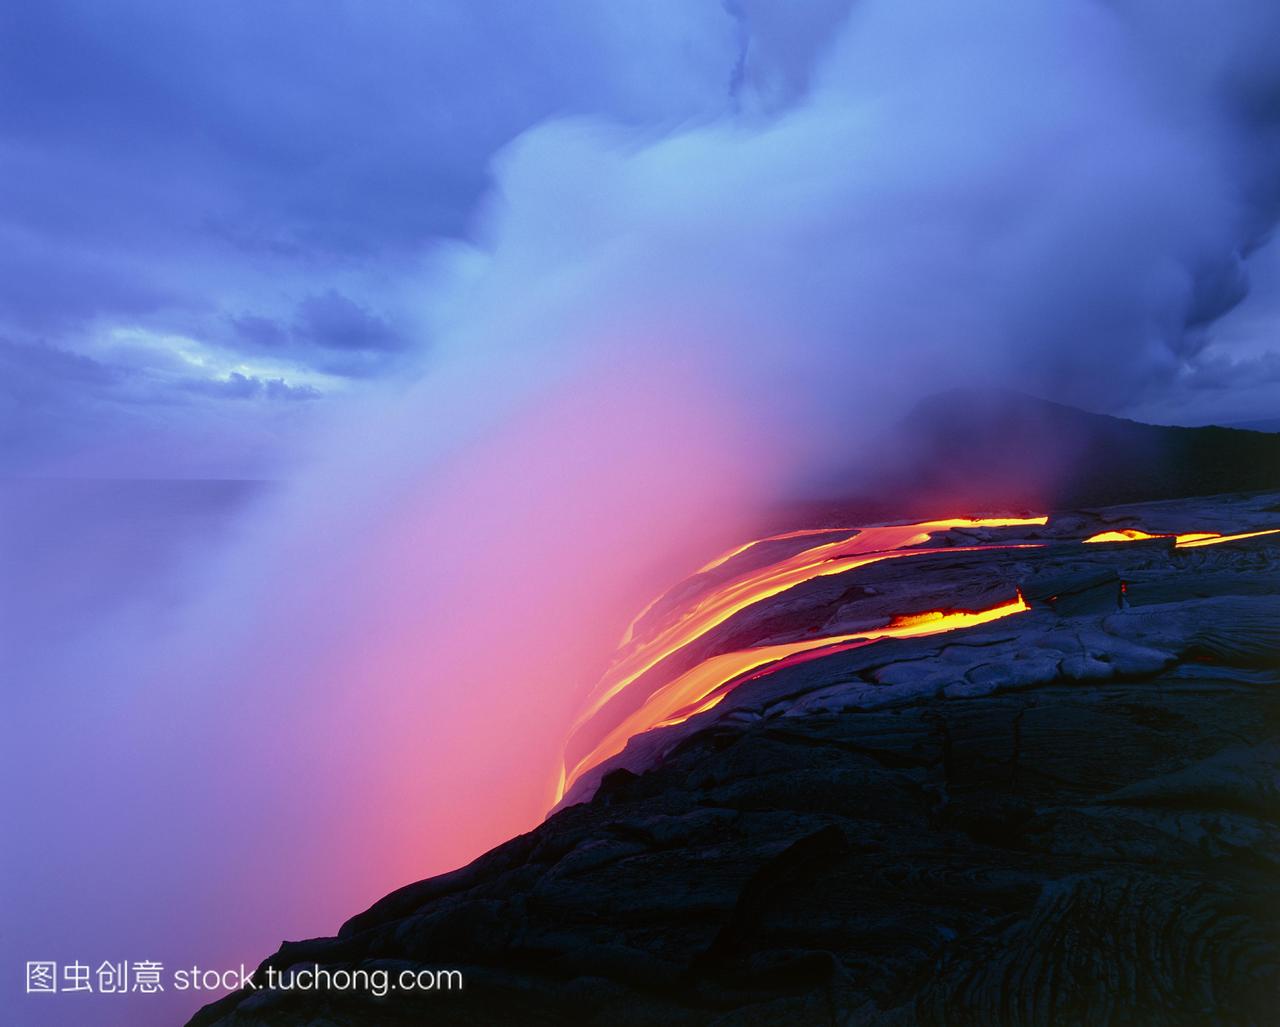 熔岩流。在夏威夷最大的岛屿夏威夷海岸,随着